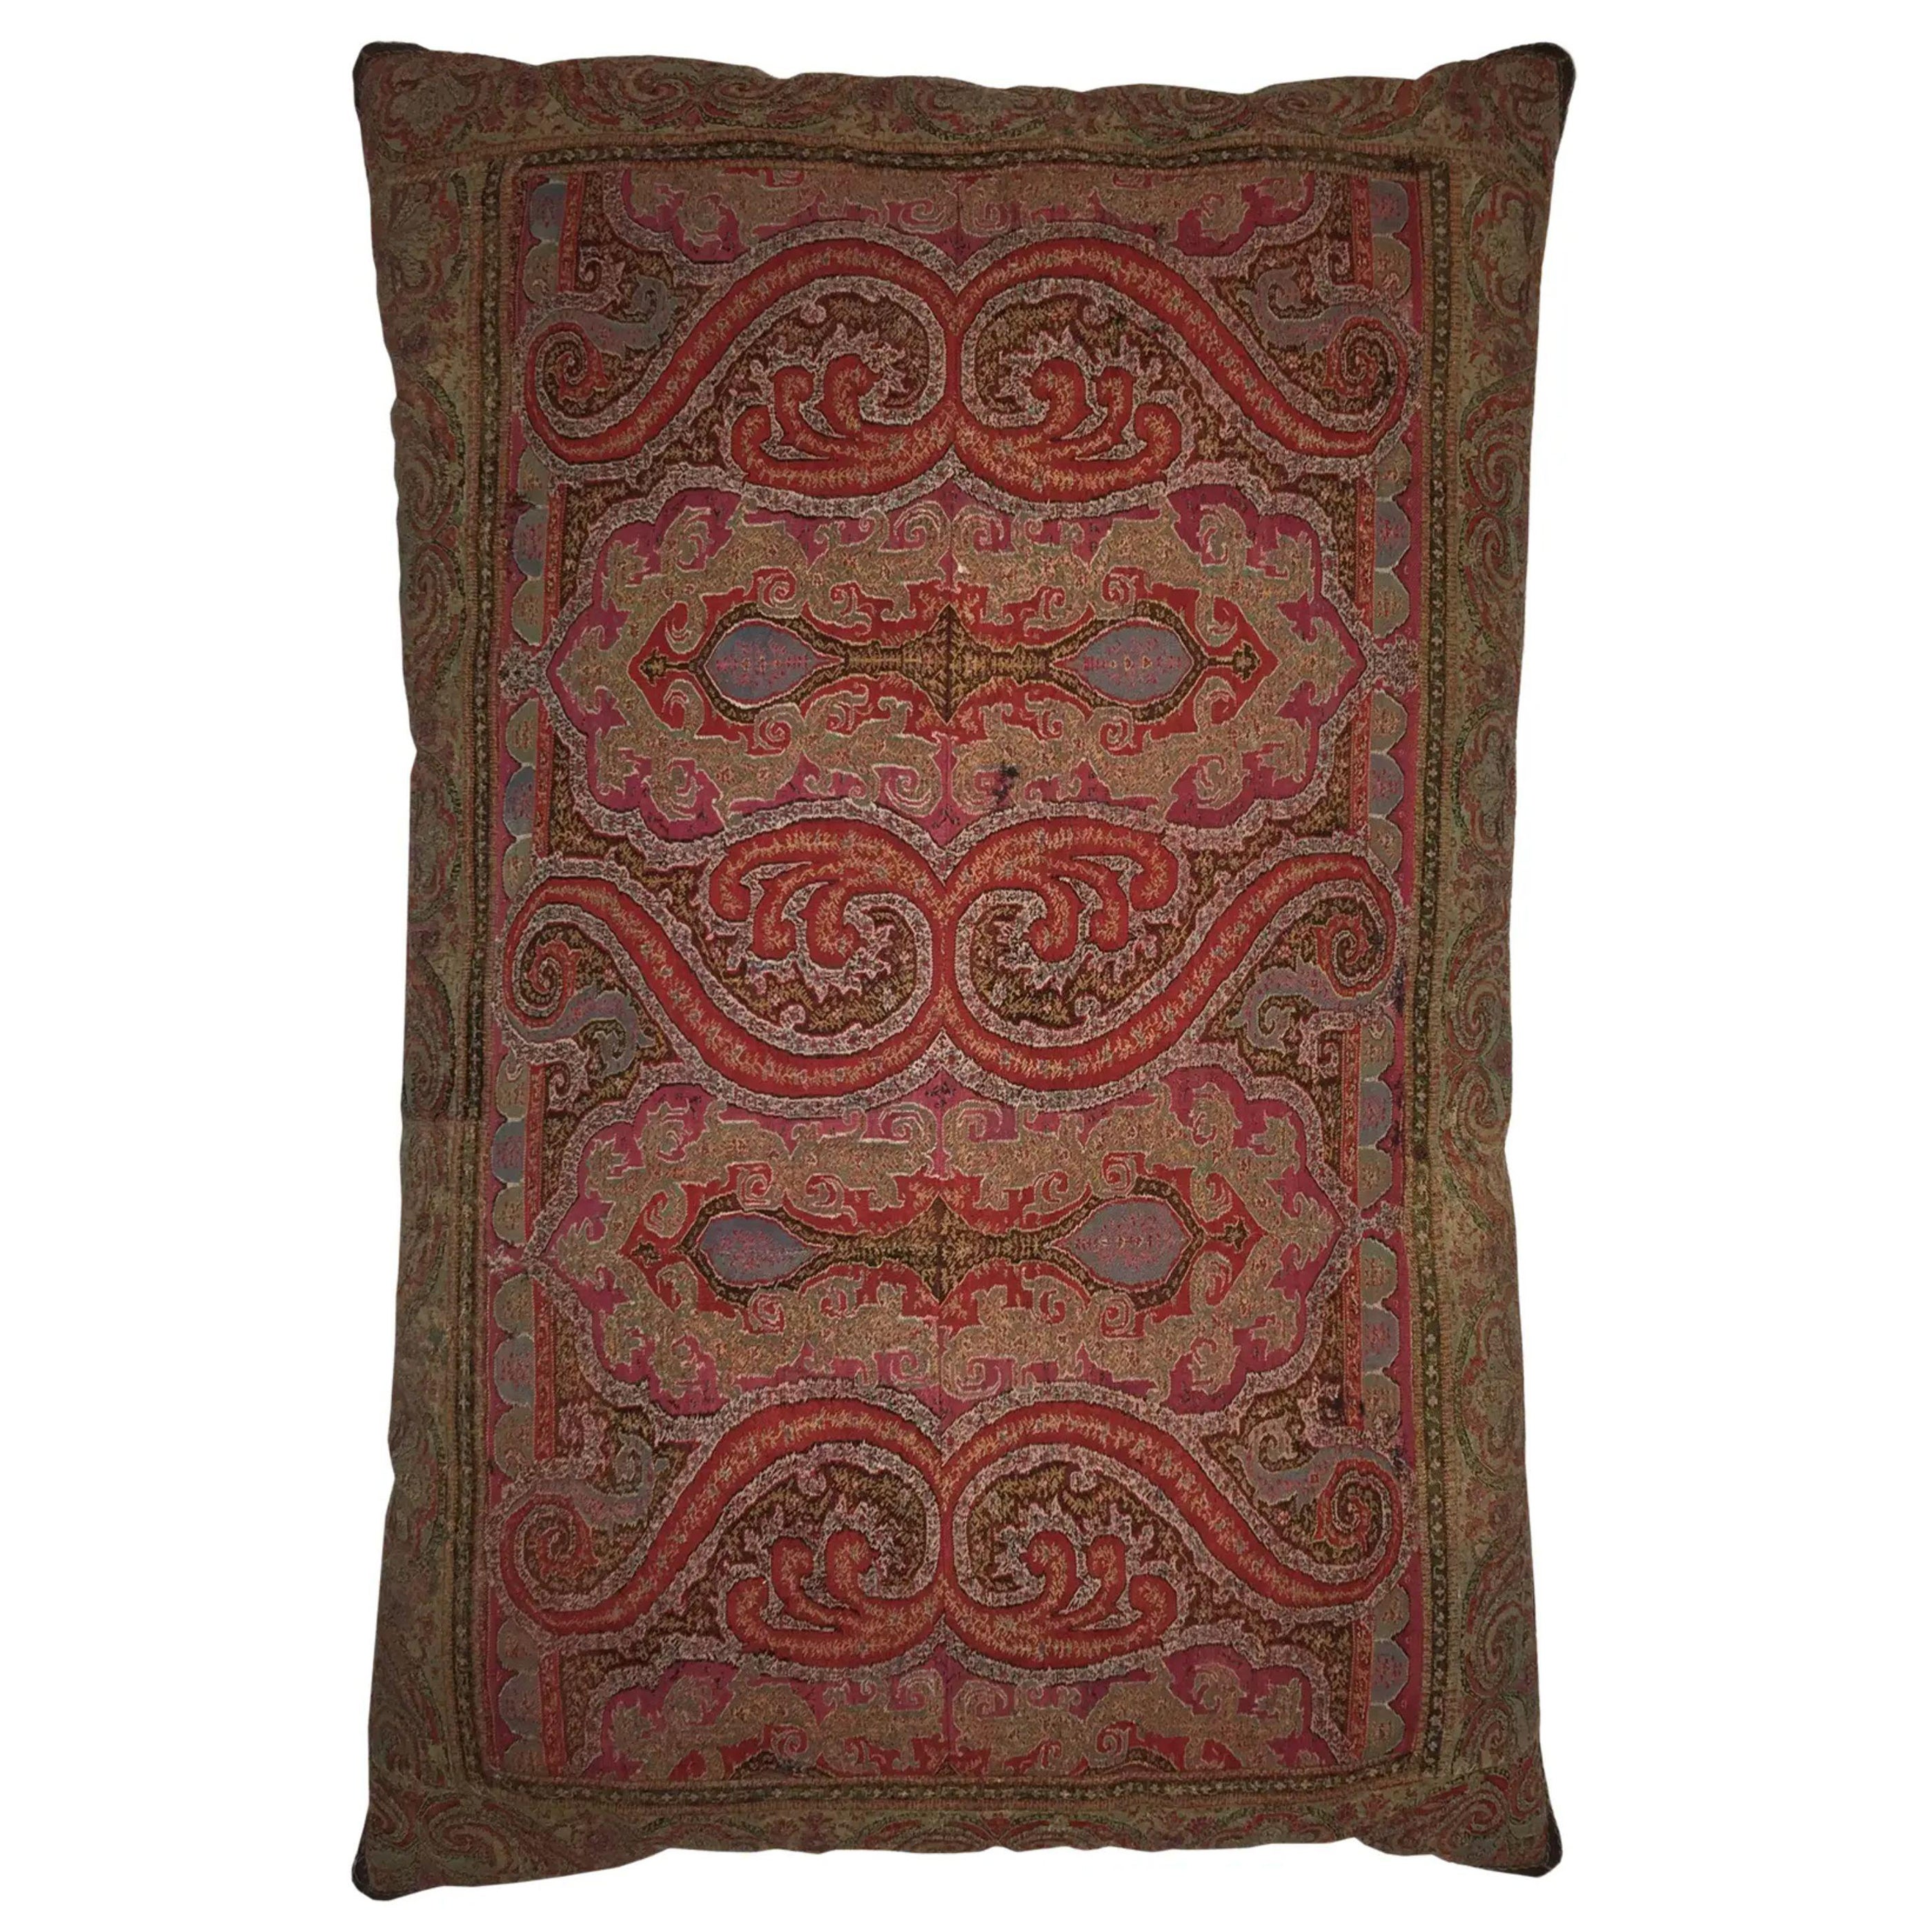 1820 Antique Indian Keshmir Pillow - 29'' X 20'' For Sale